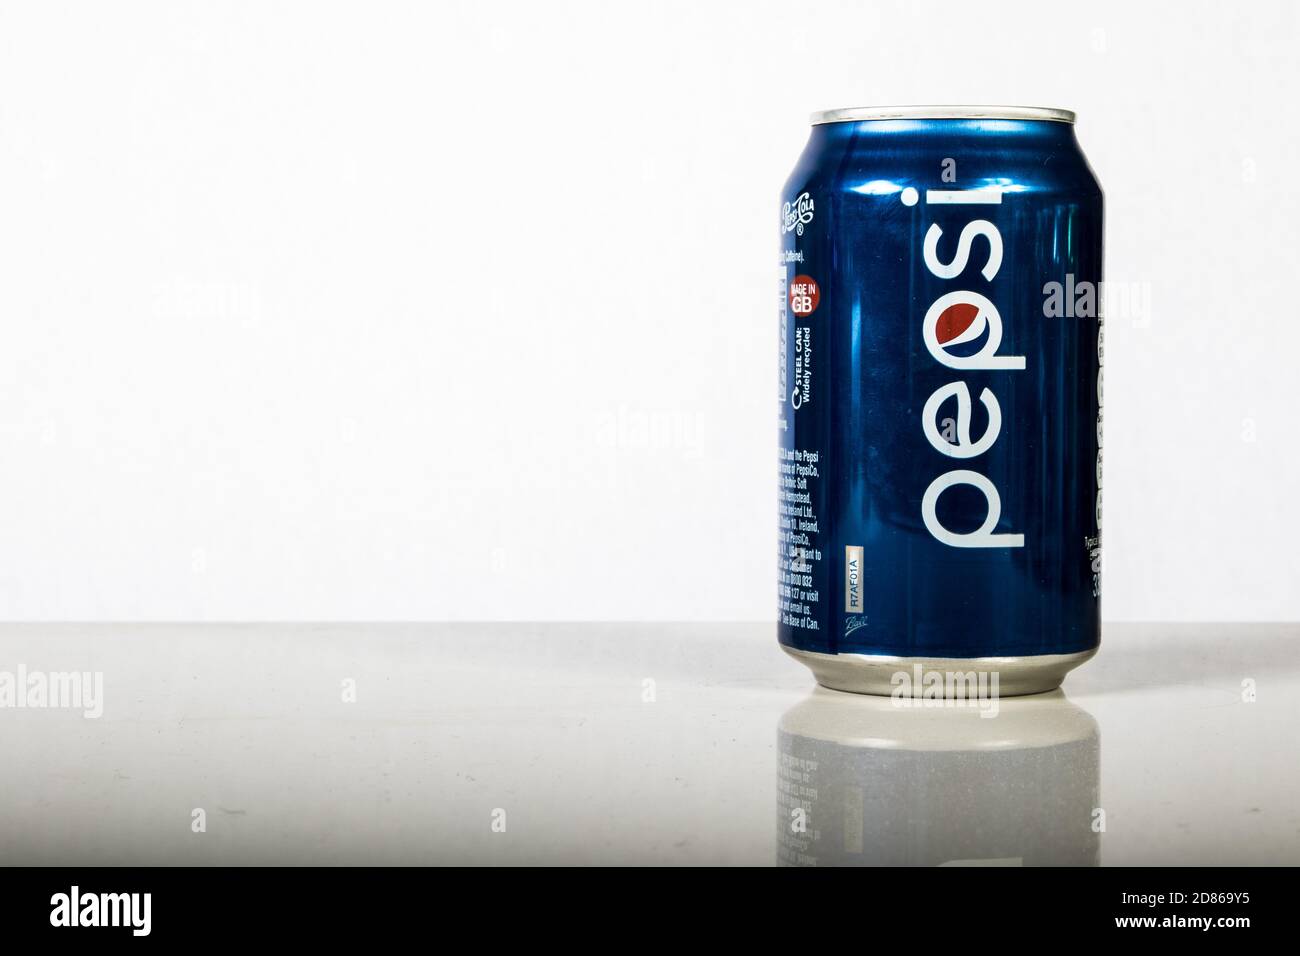 Londra, 24 ottobre 2017:- una lattina di Pepsi su sfondo bianco Foto Stock